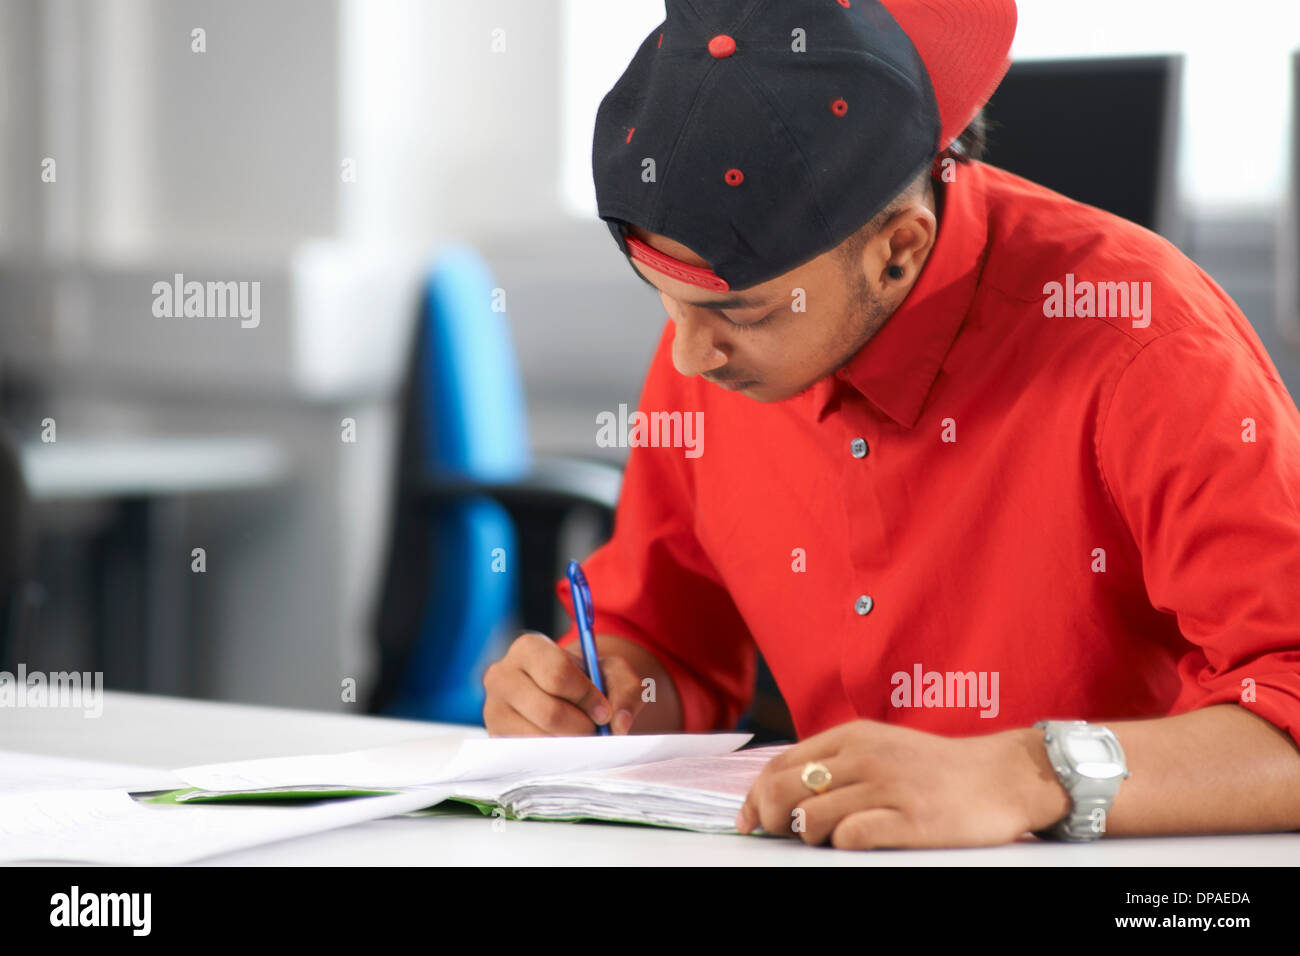 Teenage boy studying Stock Photo